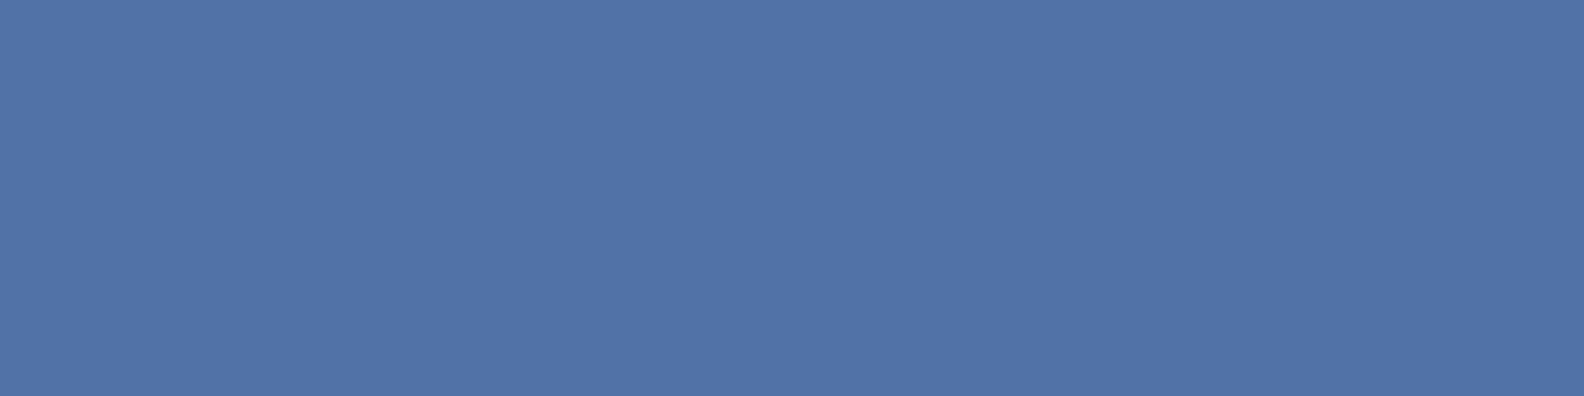 1584x396 Blue Yonder Solid Color Background